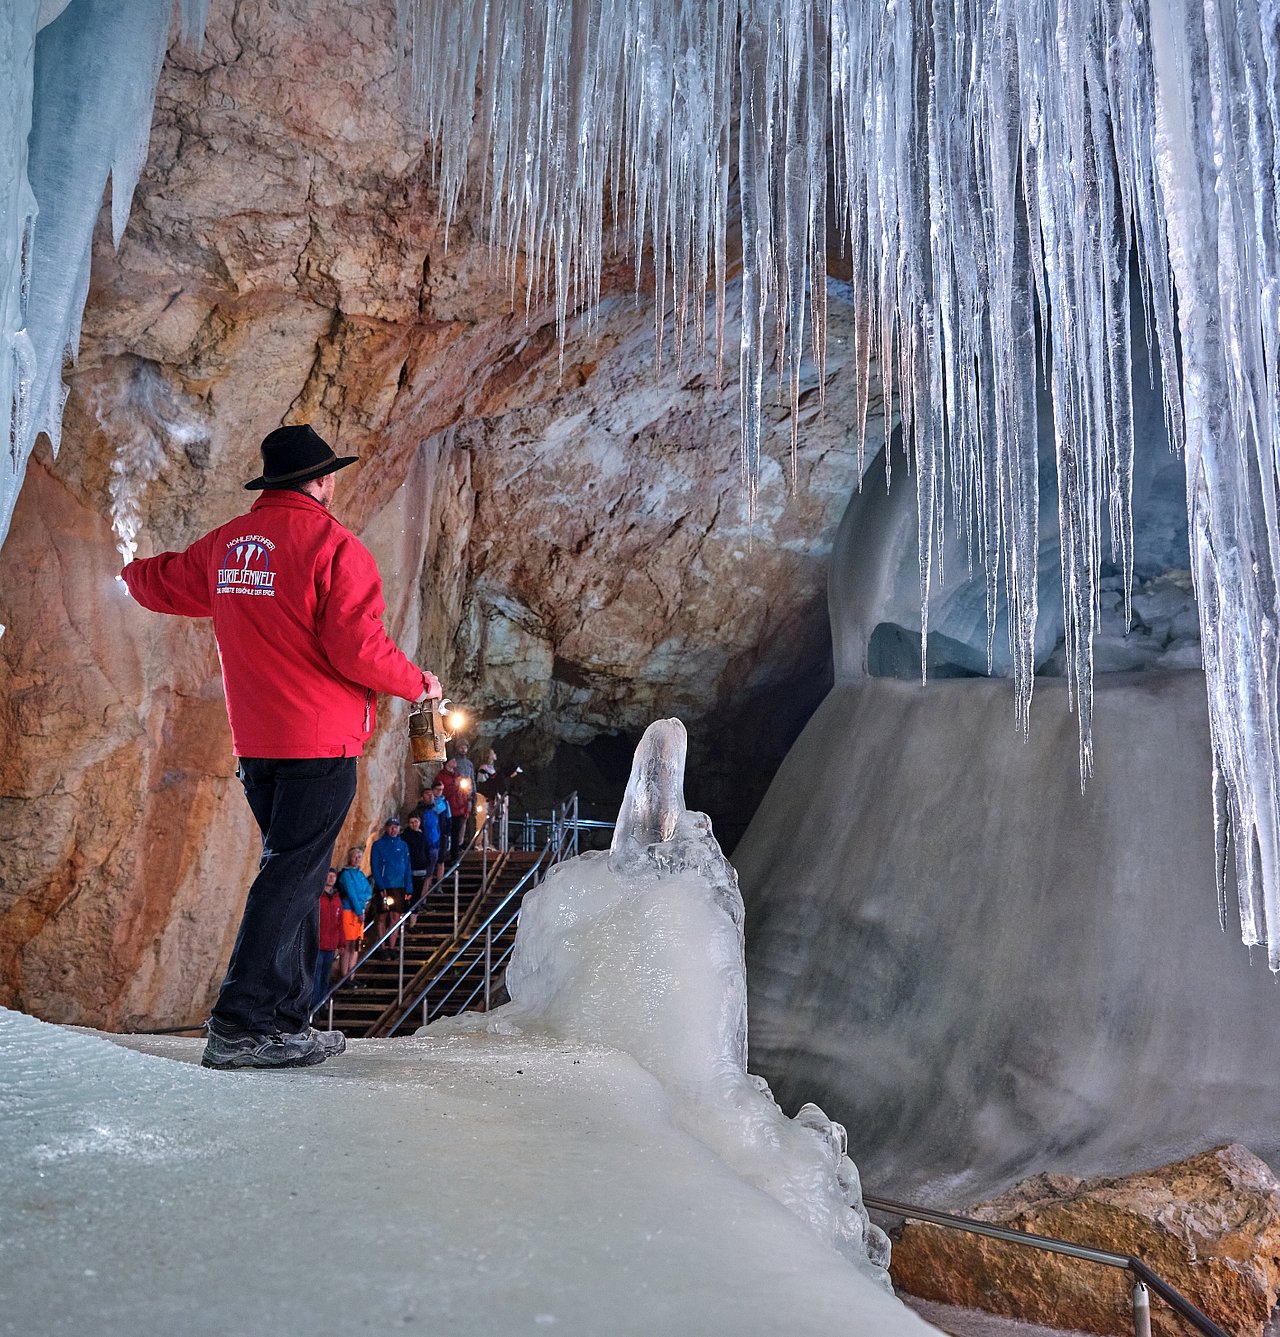 werfen ice caves tour from salzburg